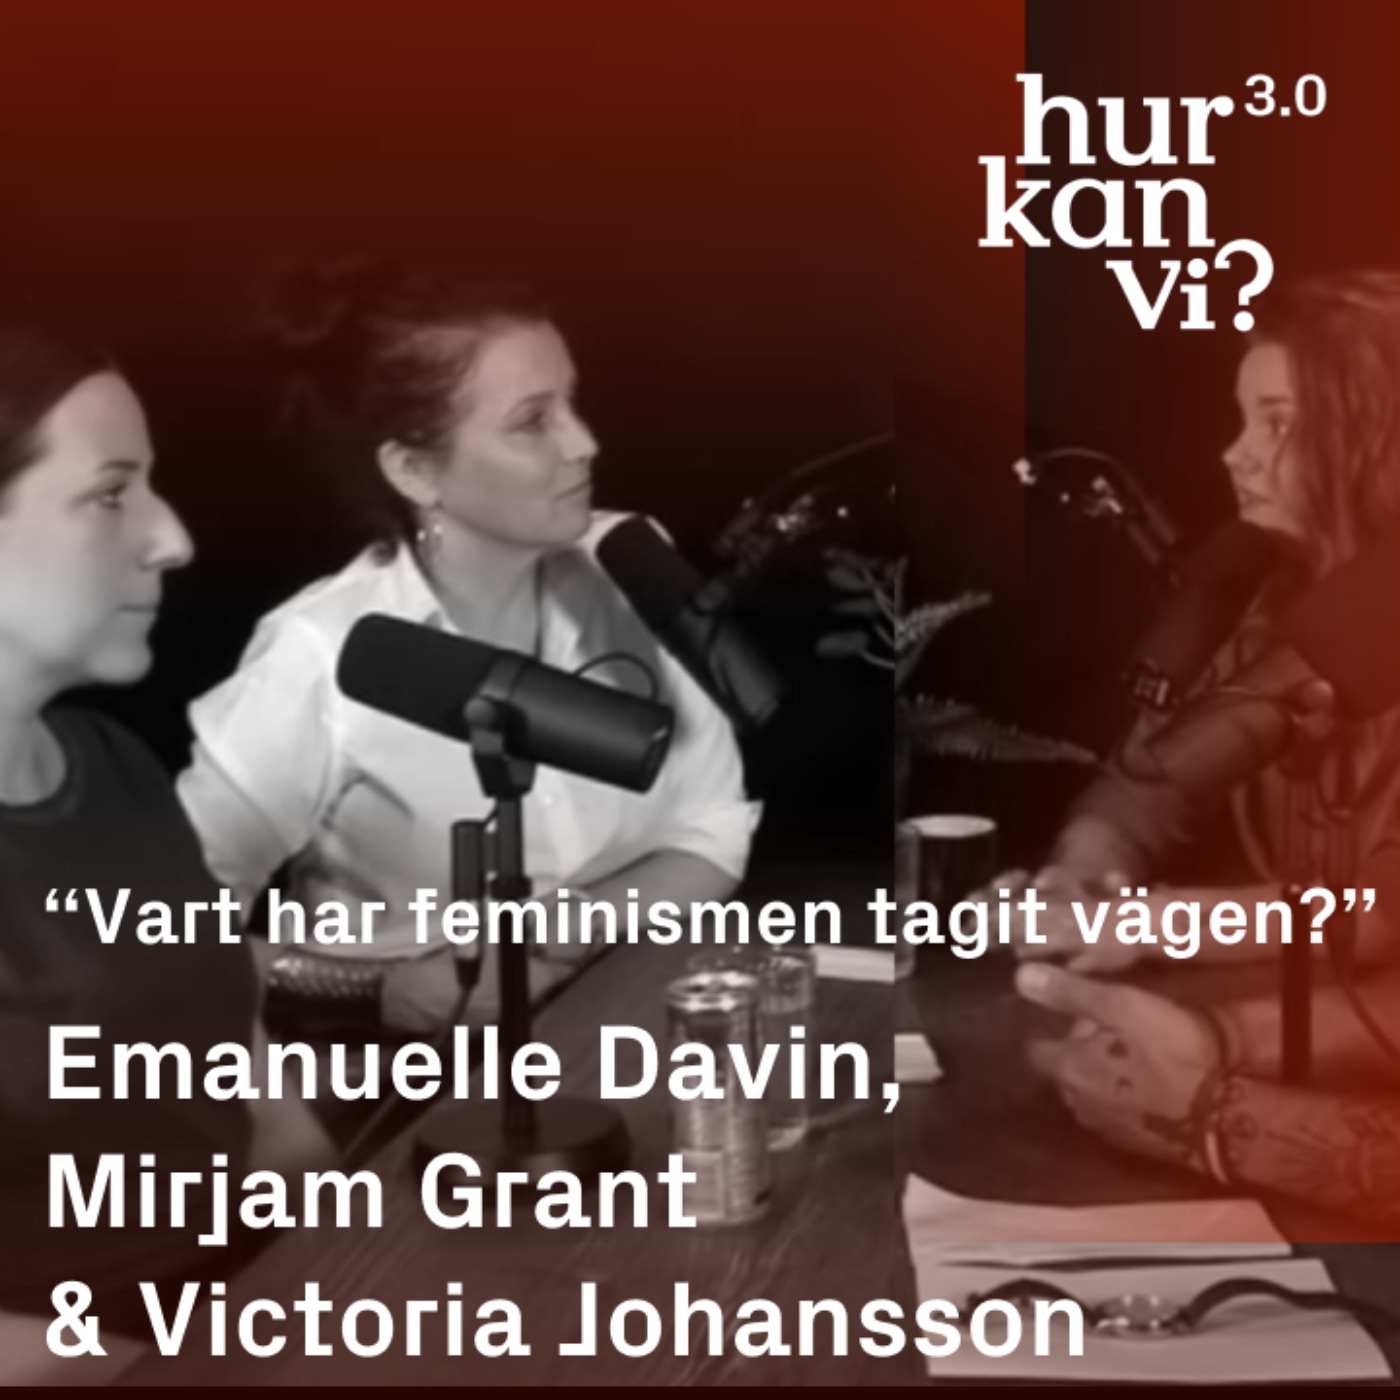 Emanuelle Davin, Mirjam Grant & Victoria Johansson - “Vart har feminismen tagit vägen?”